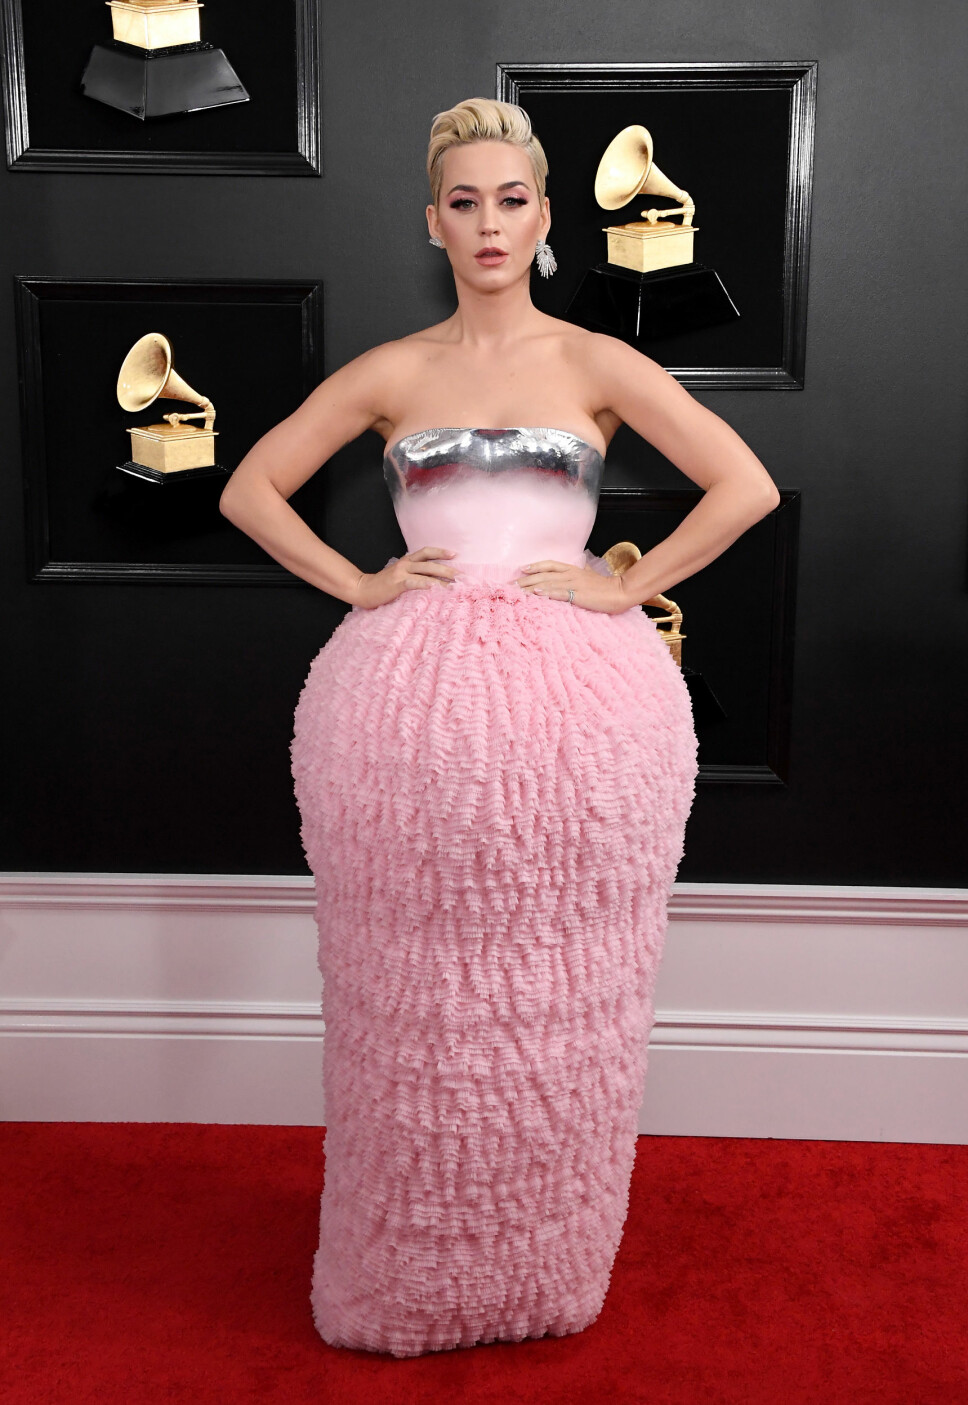 BLANDET MOTTAKELSE: Katy Perry fikk ikke spesielt mye skryt for kjolen hun hadde valgt på den røde løperen under Grammy-utdelingen.